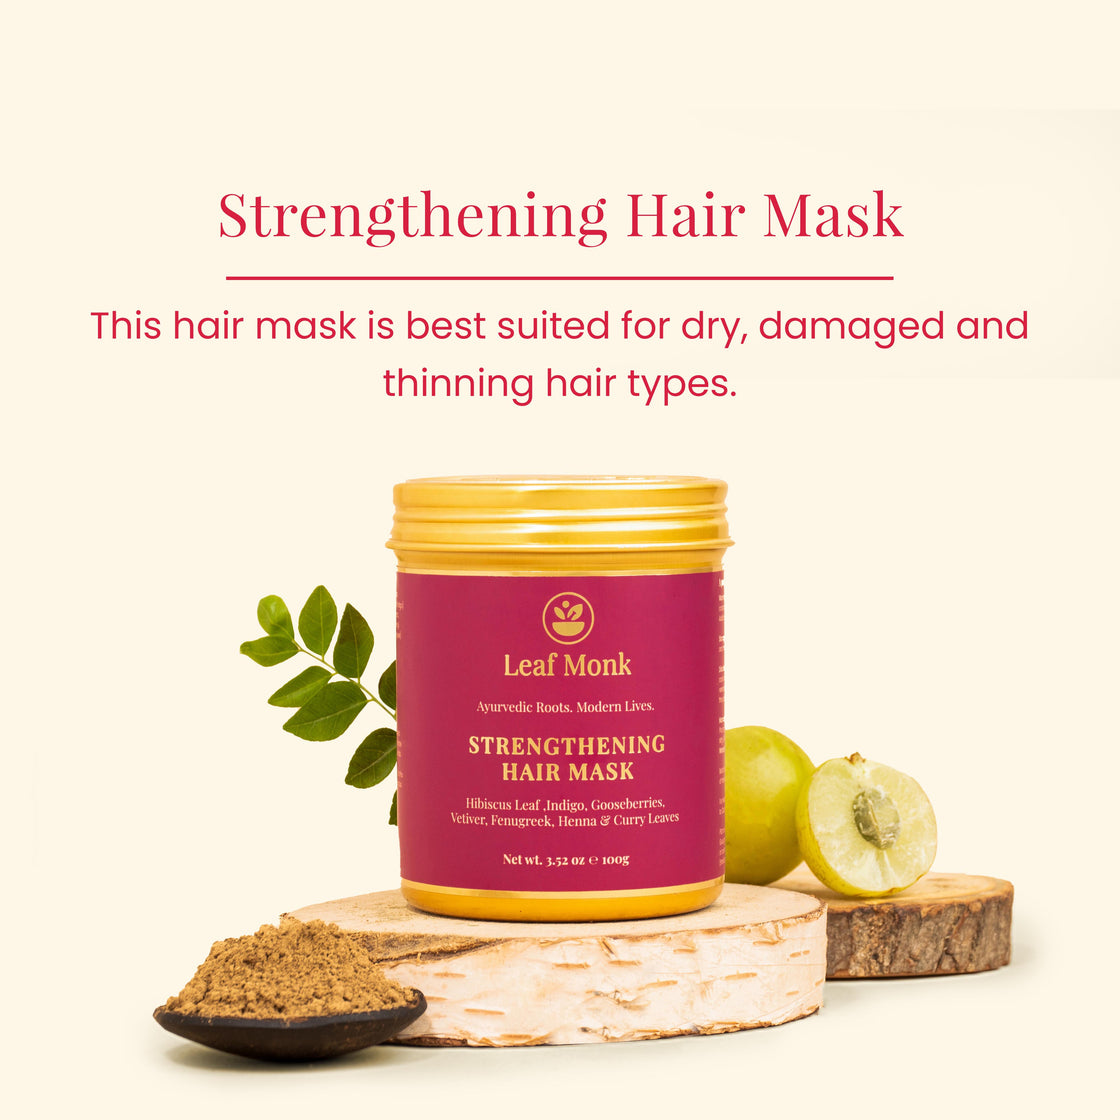 Strengthening Hair Mask with Hibiscus Leaf, Gooseberries & Fenugreek